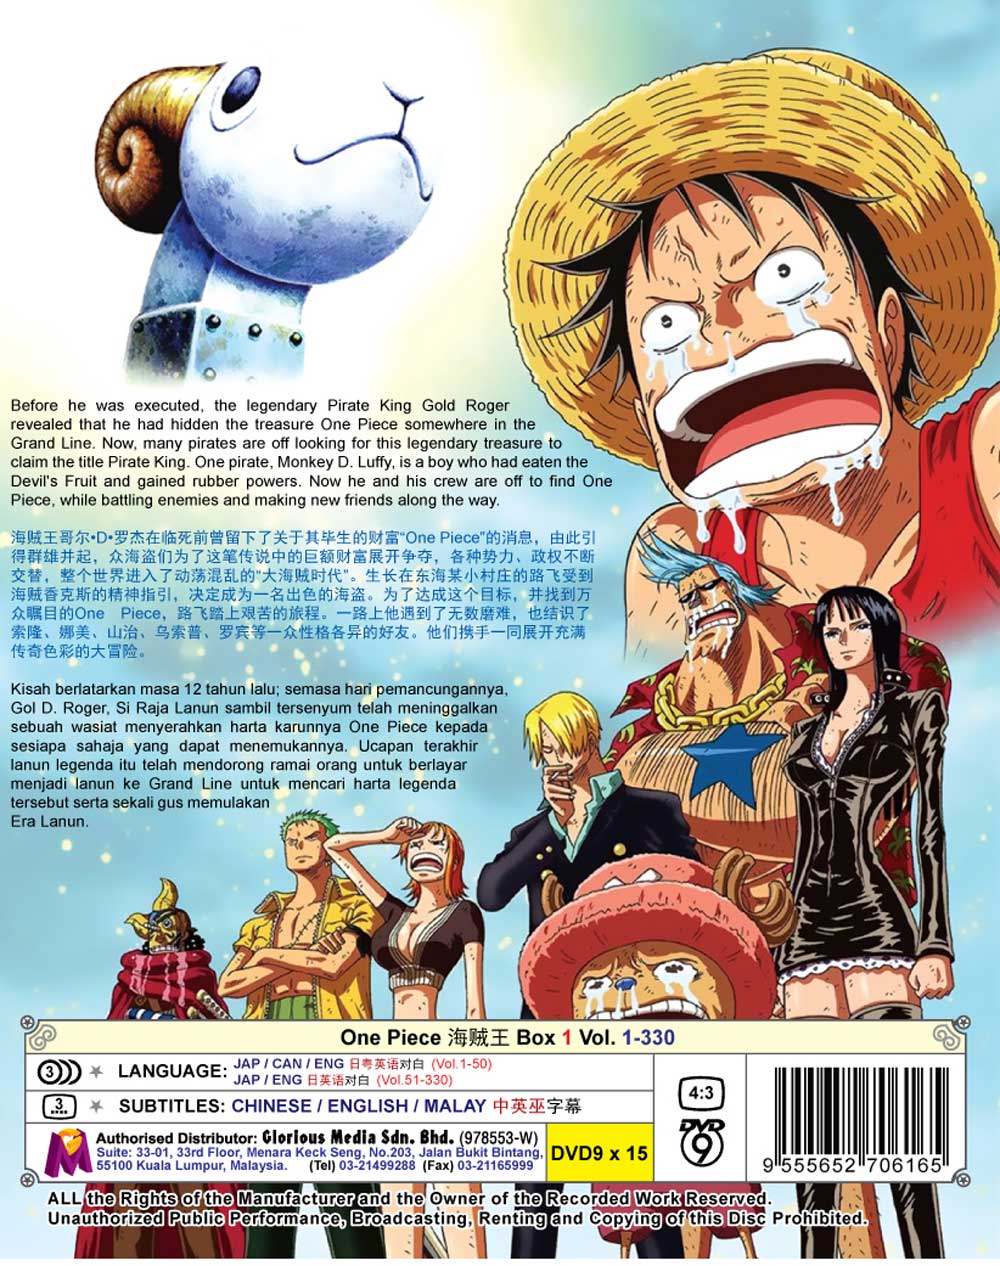 ワンピース Box 1 (TV 1 - 330) (DVD) (1999)アニメ | 1-330